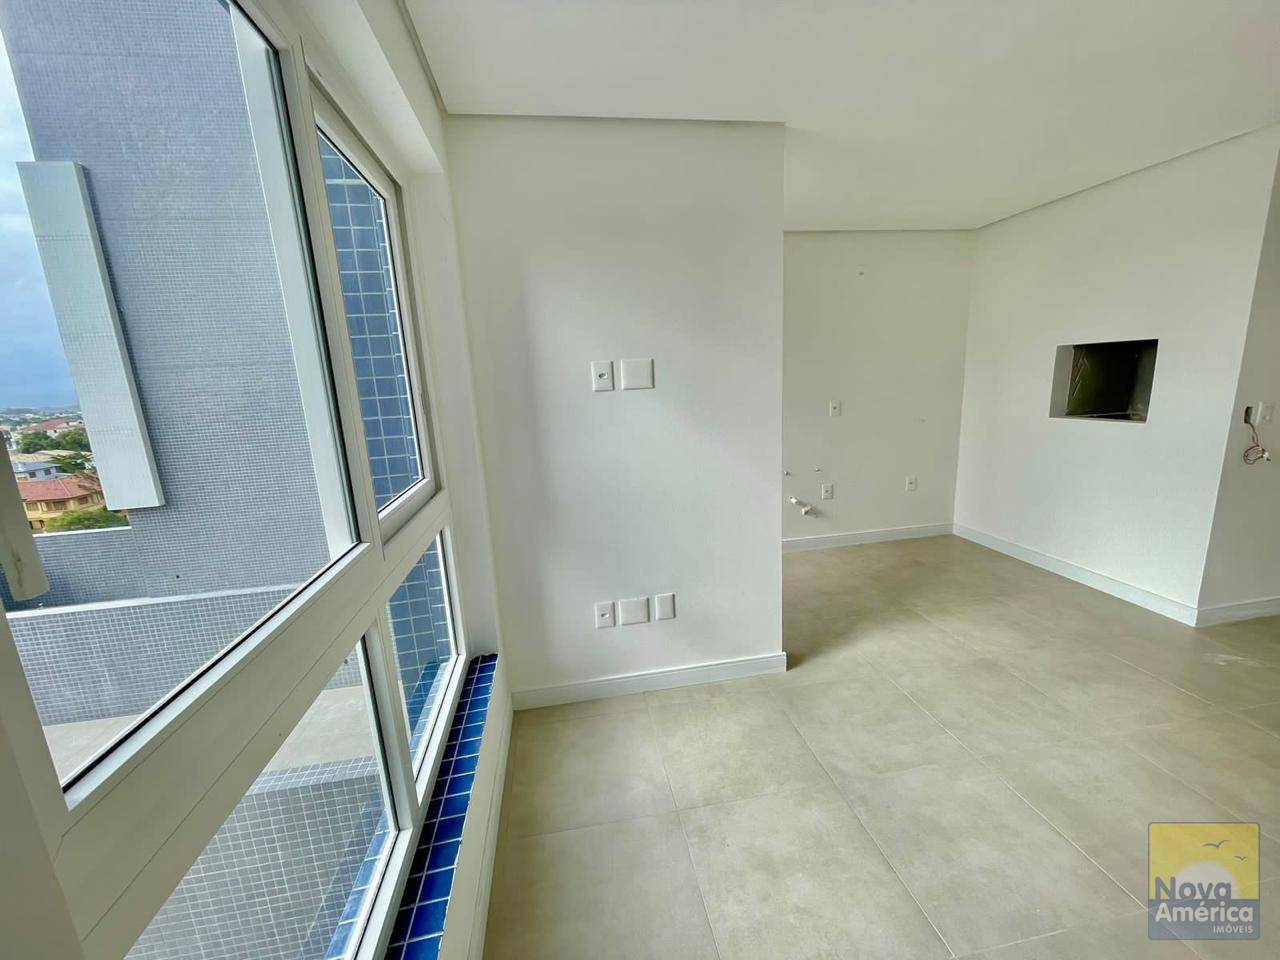 Apartamento 2 dormitórios para venda, Zona Nova em Capão da Canoa | Ref.: 21808